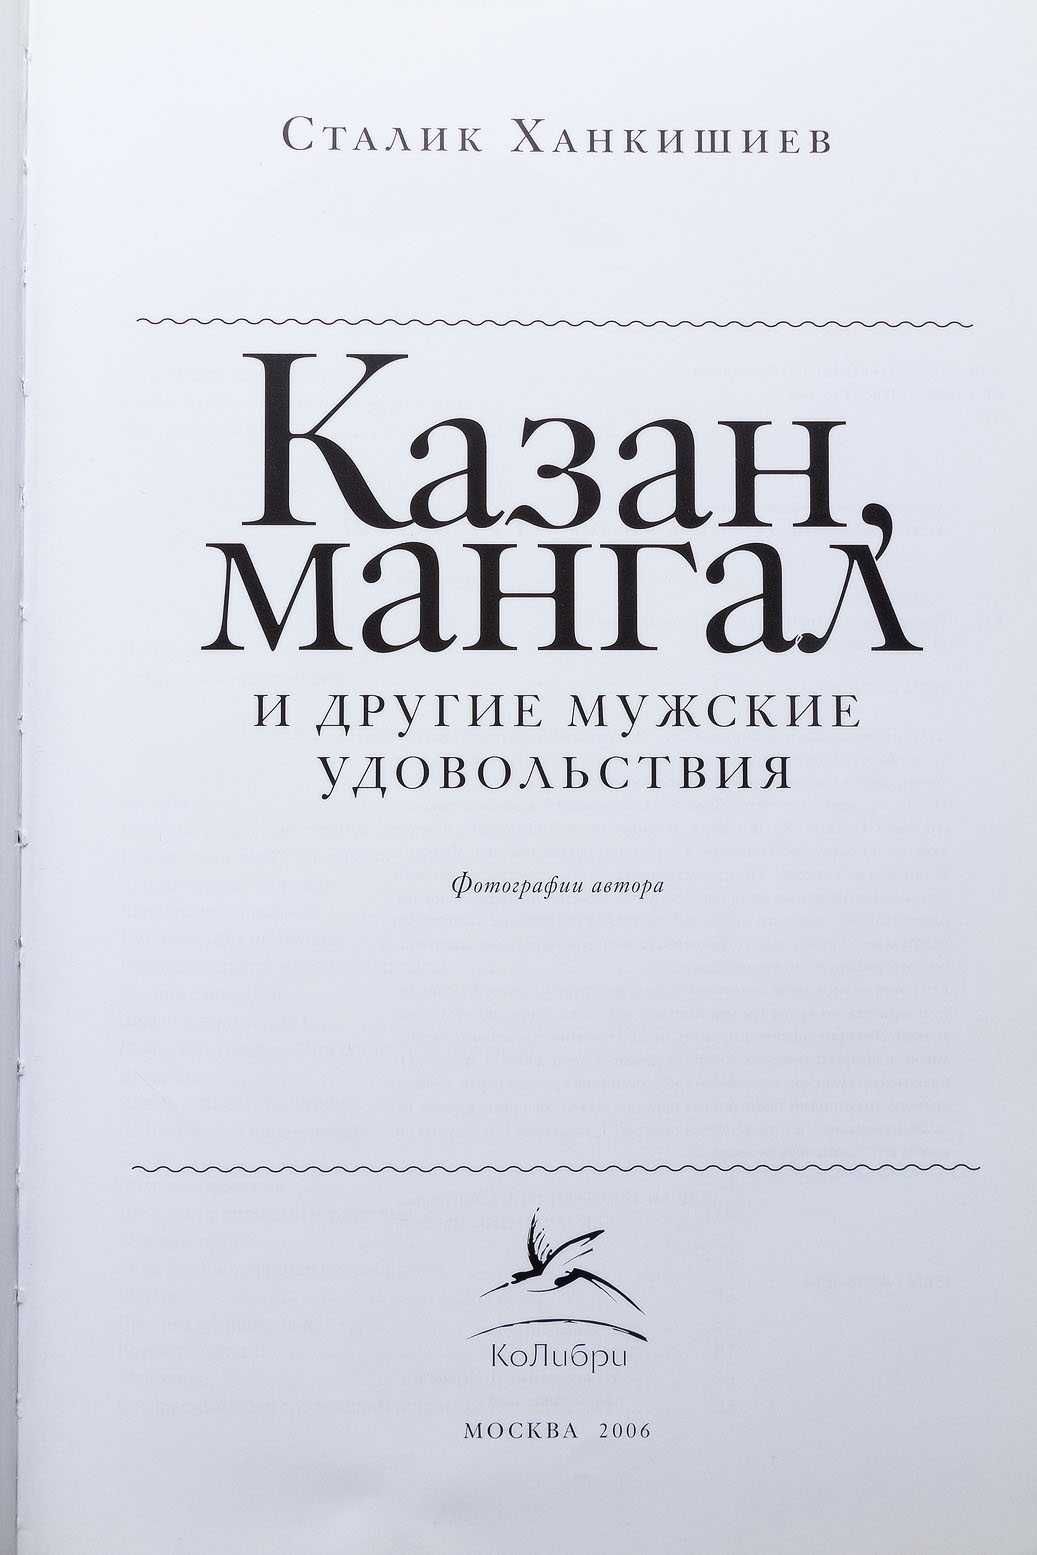 Книга  Ханкишиева  Казан, мангал и другие мужские удовольствия 2006 г.